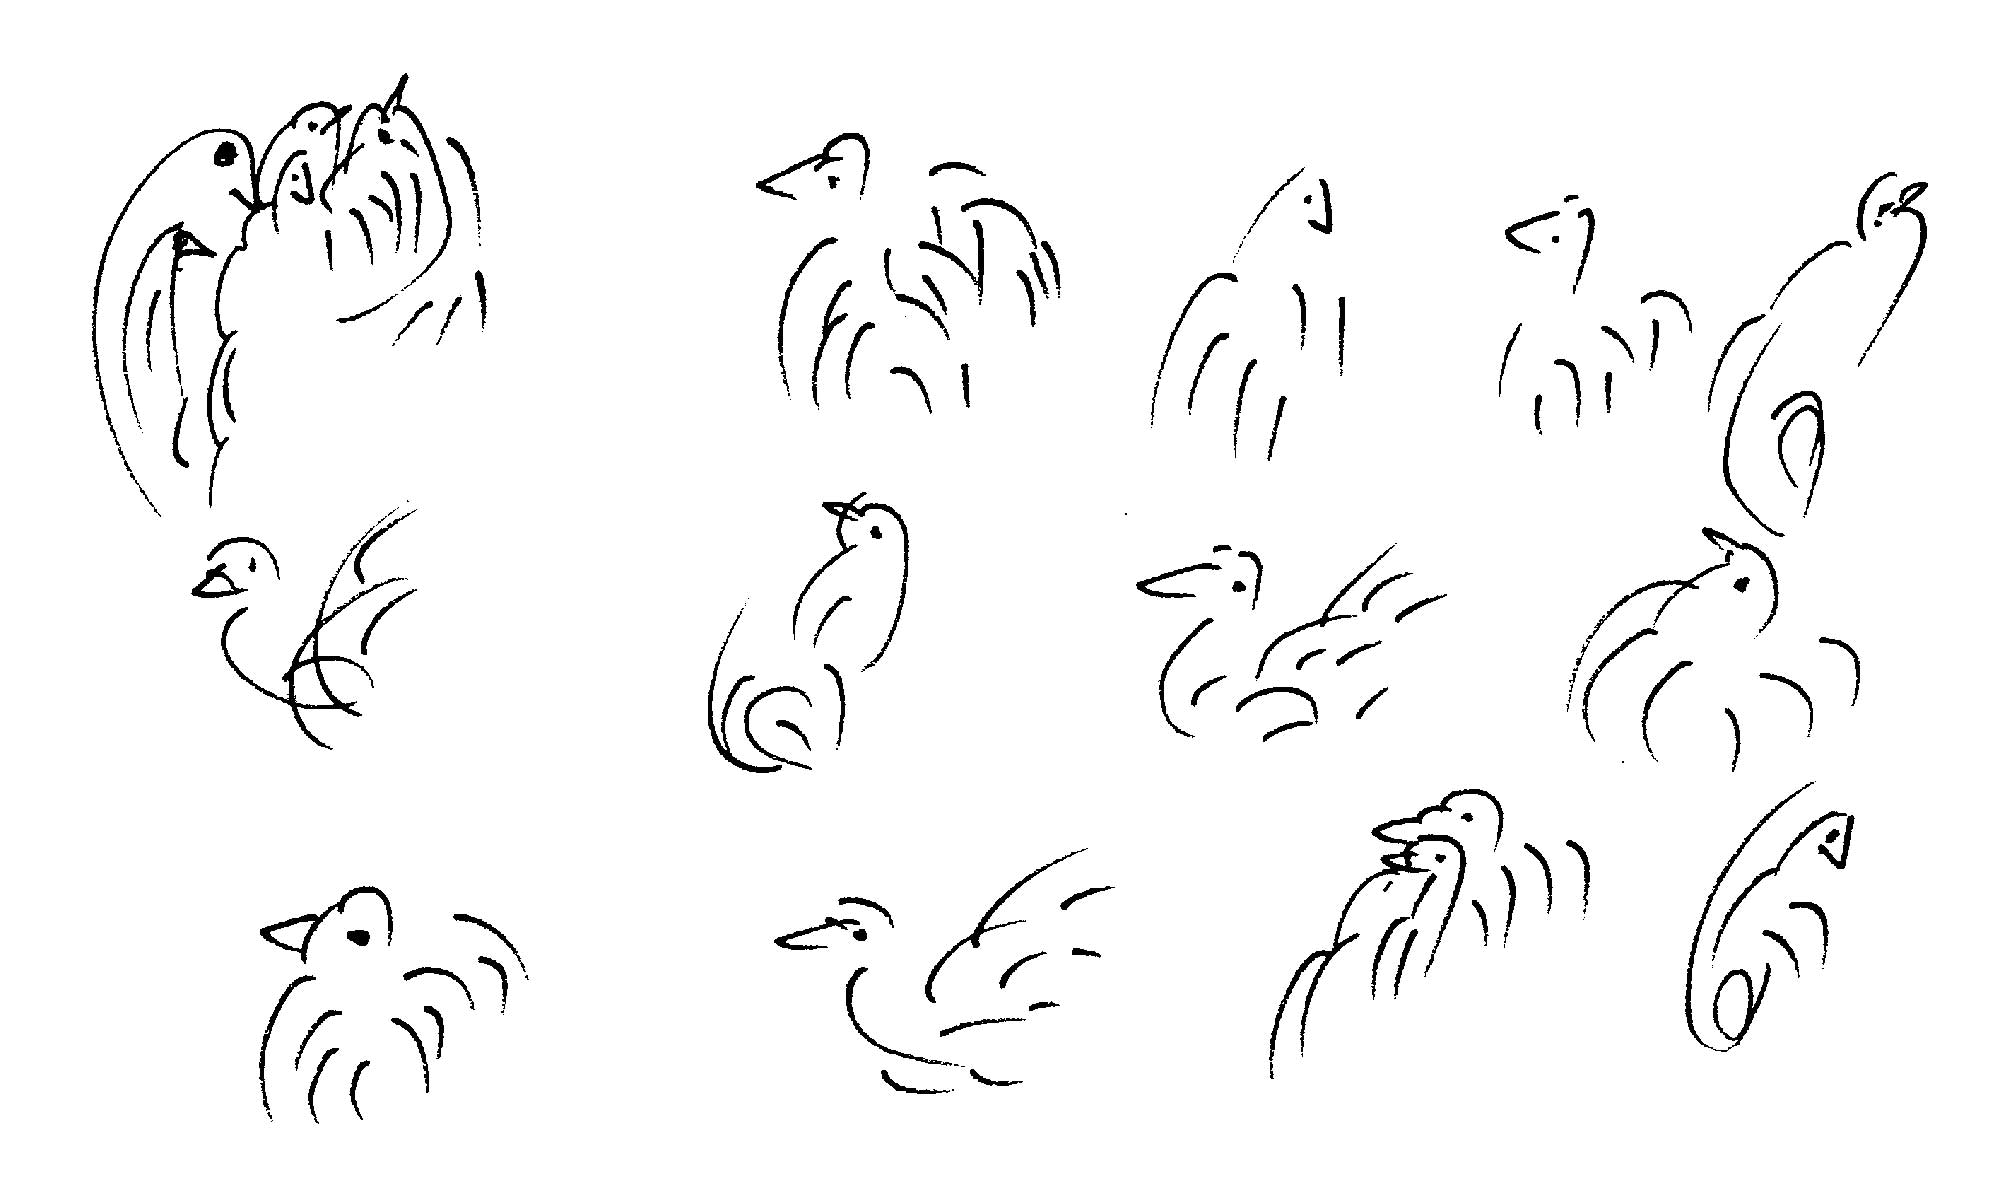 Bird-Drawing-by-Sri-Chinmoy-undated-297